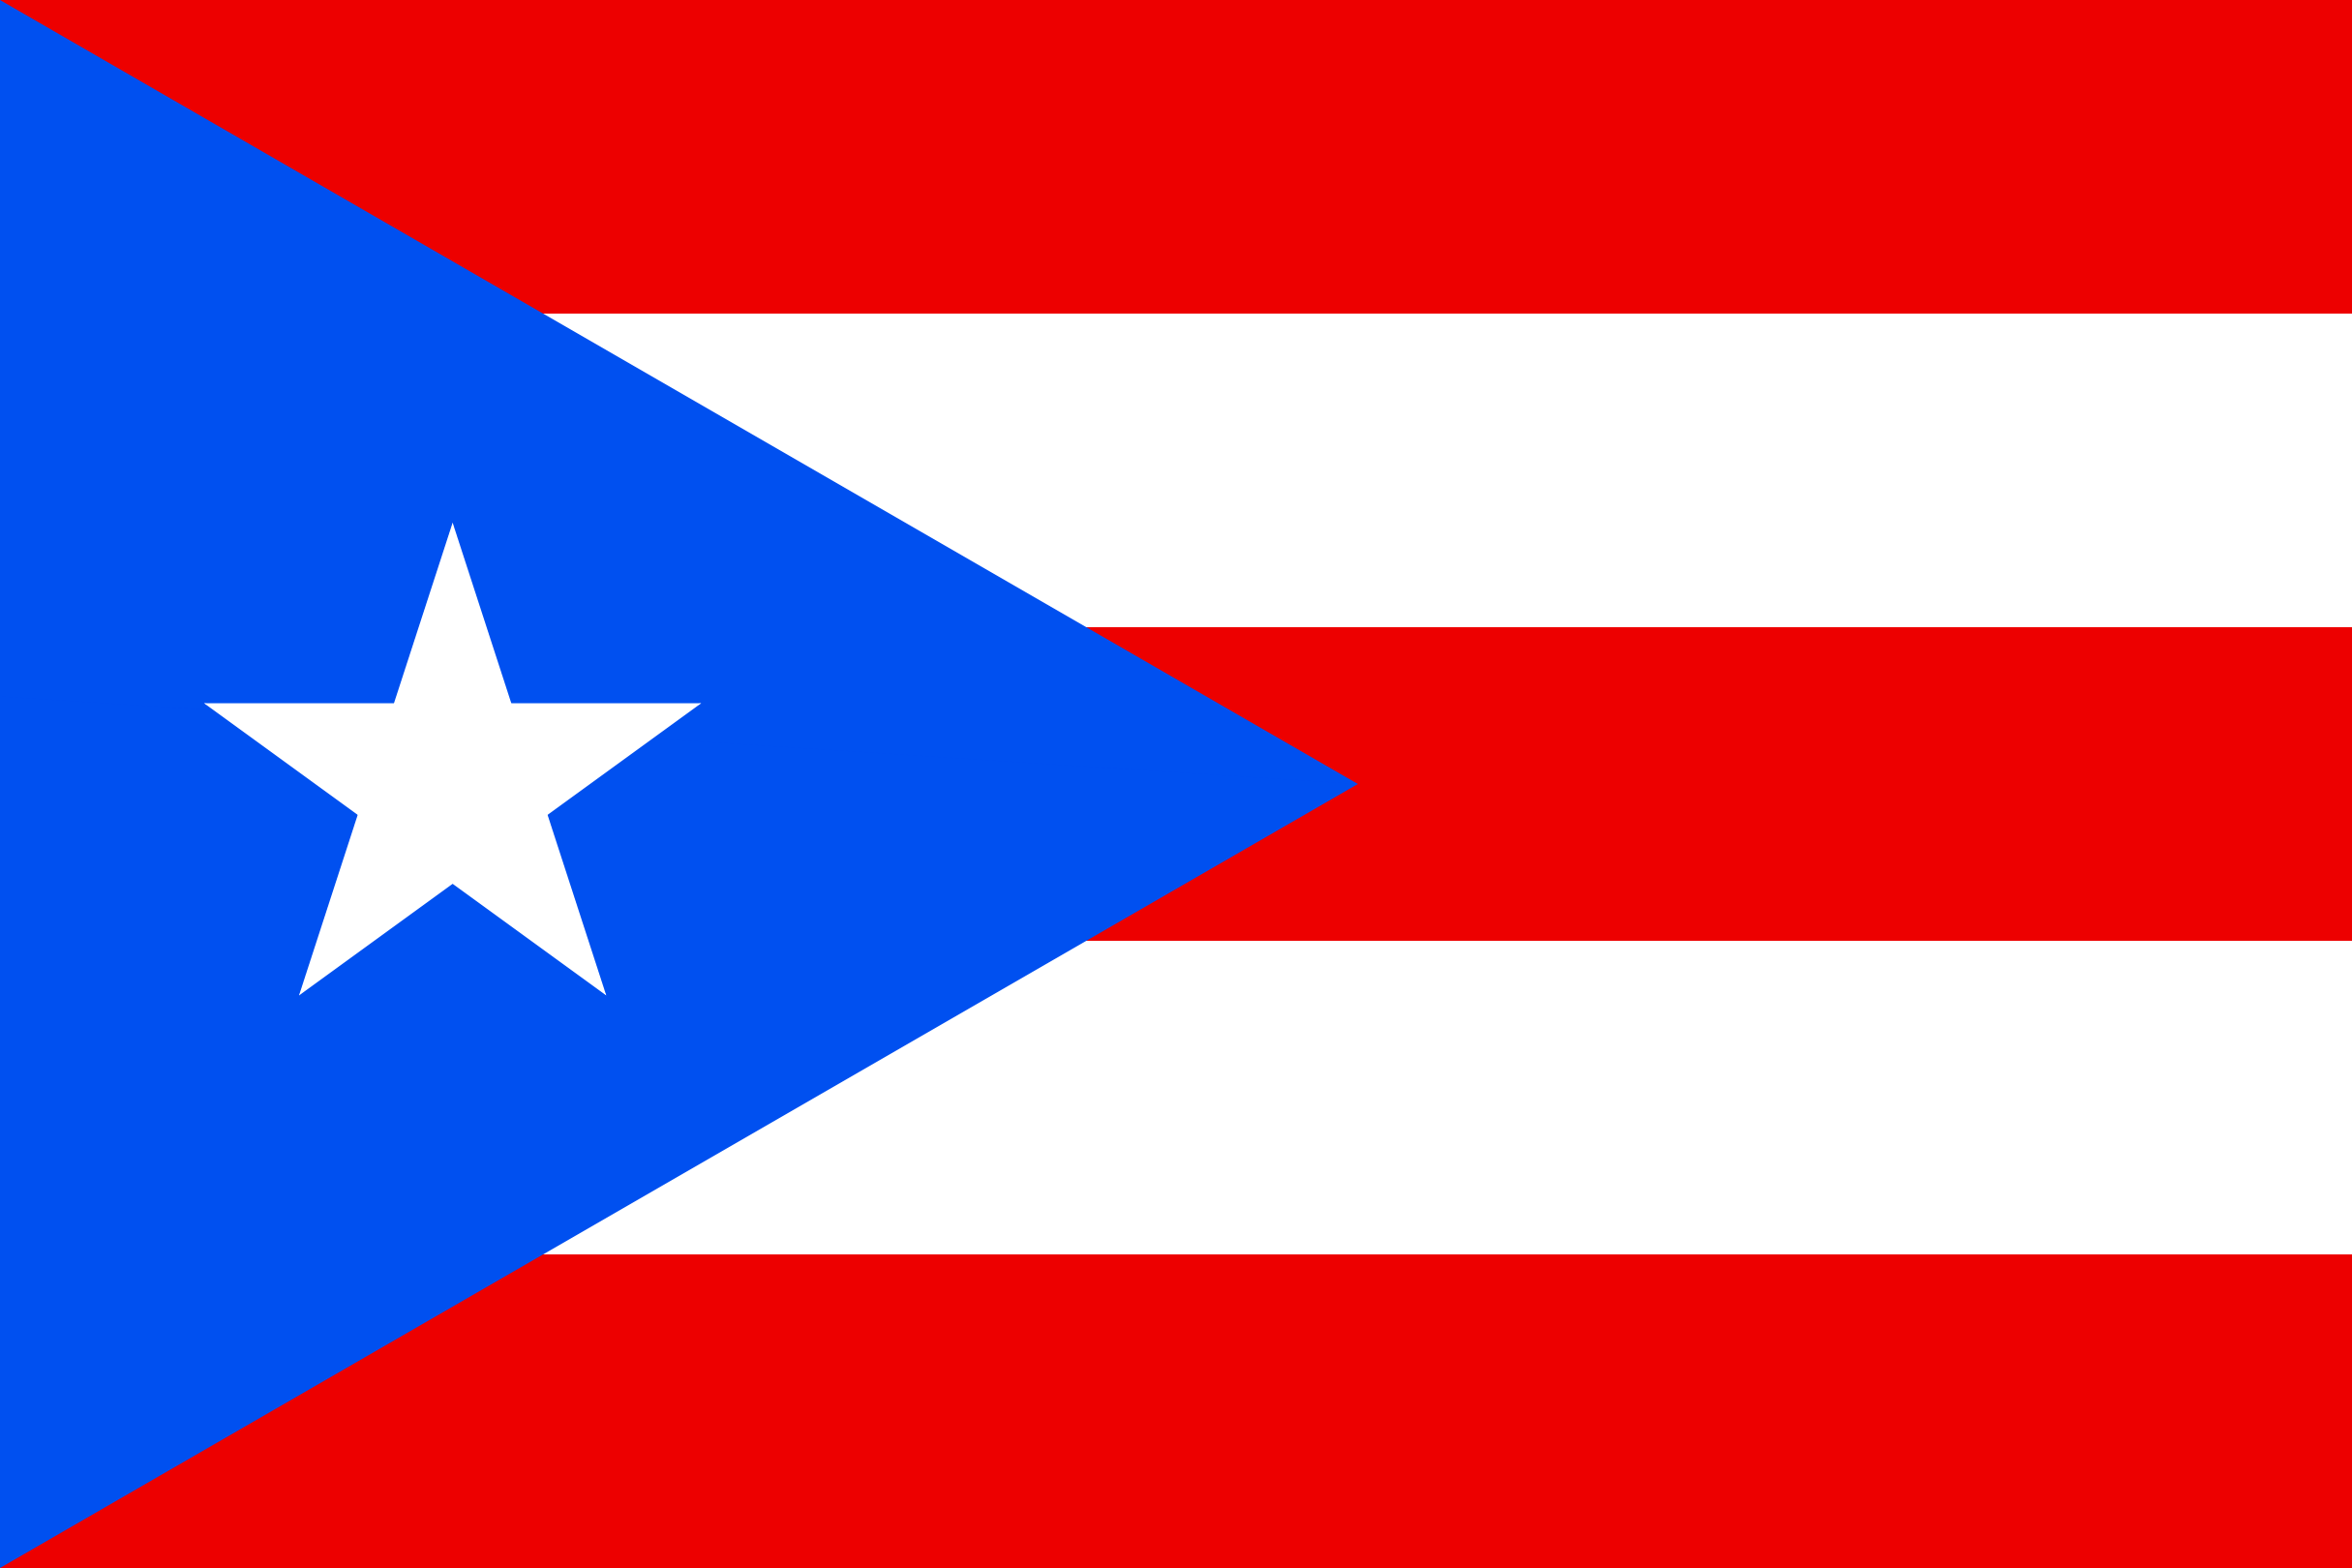 Puerto_Rico